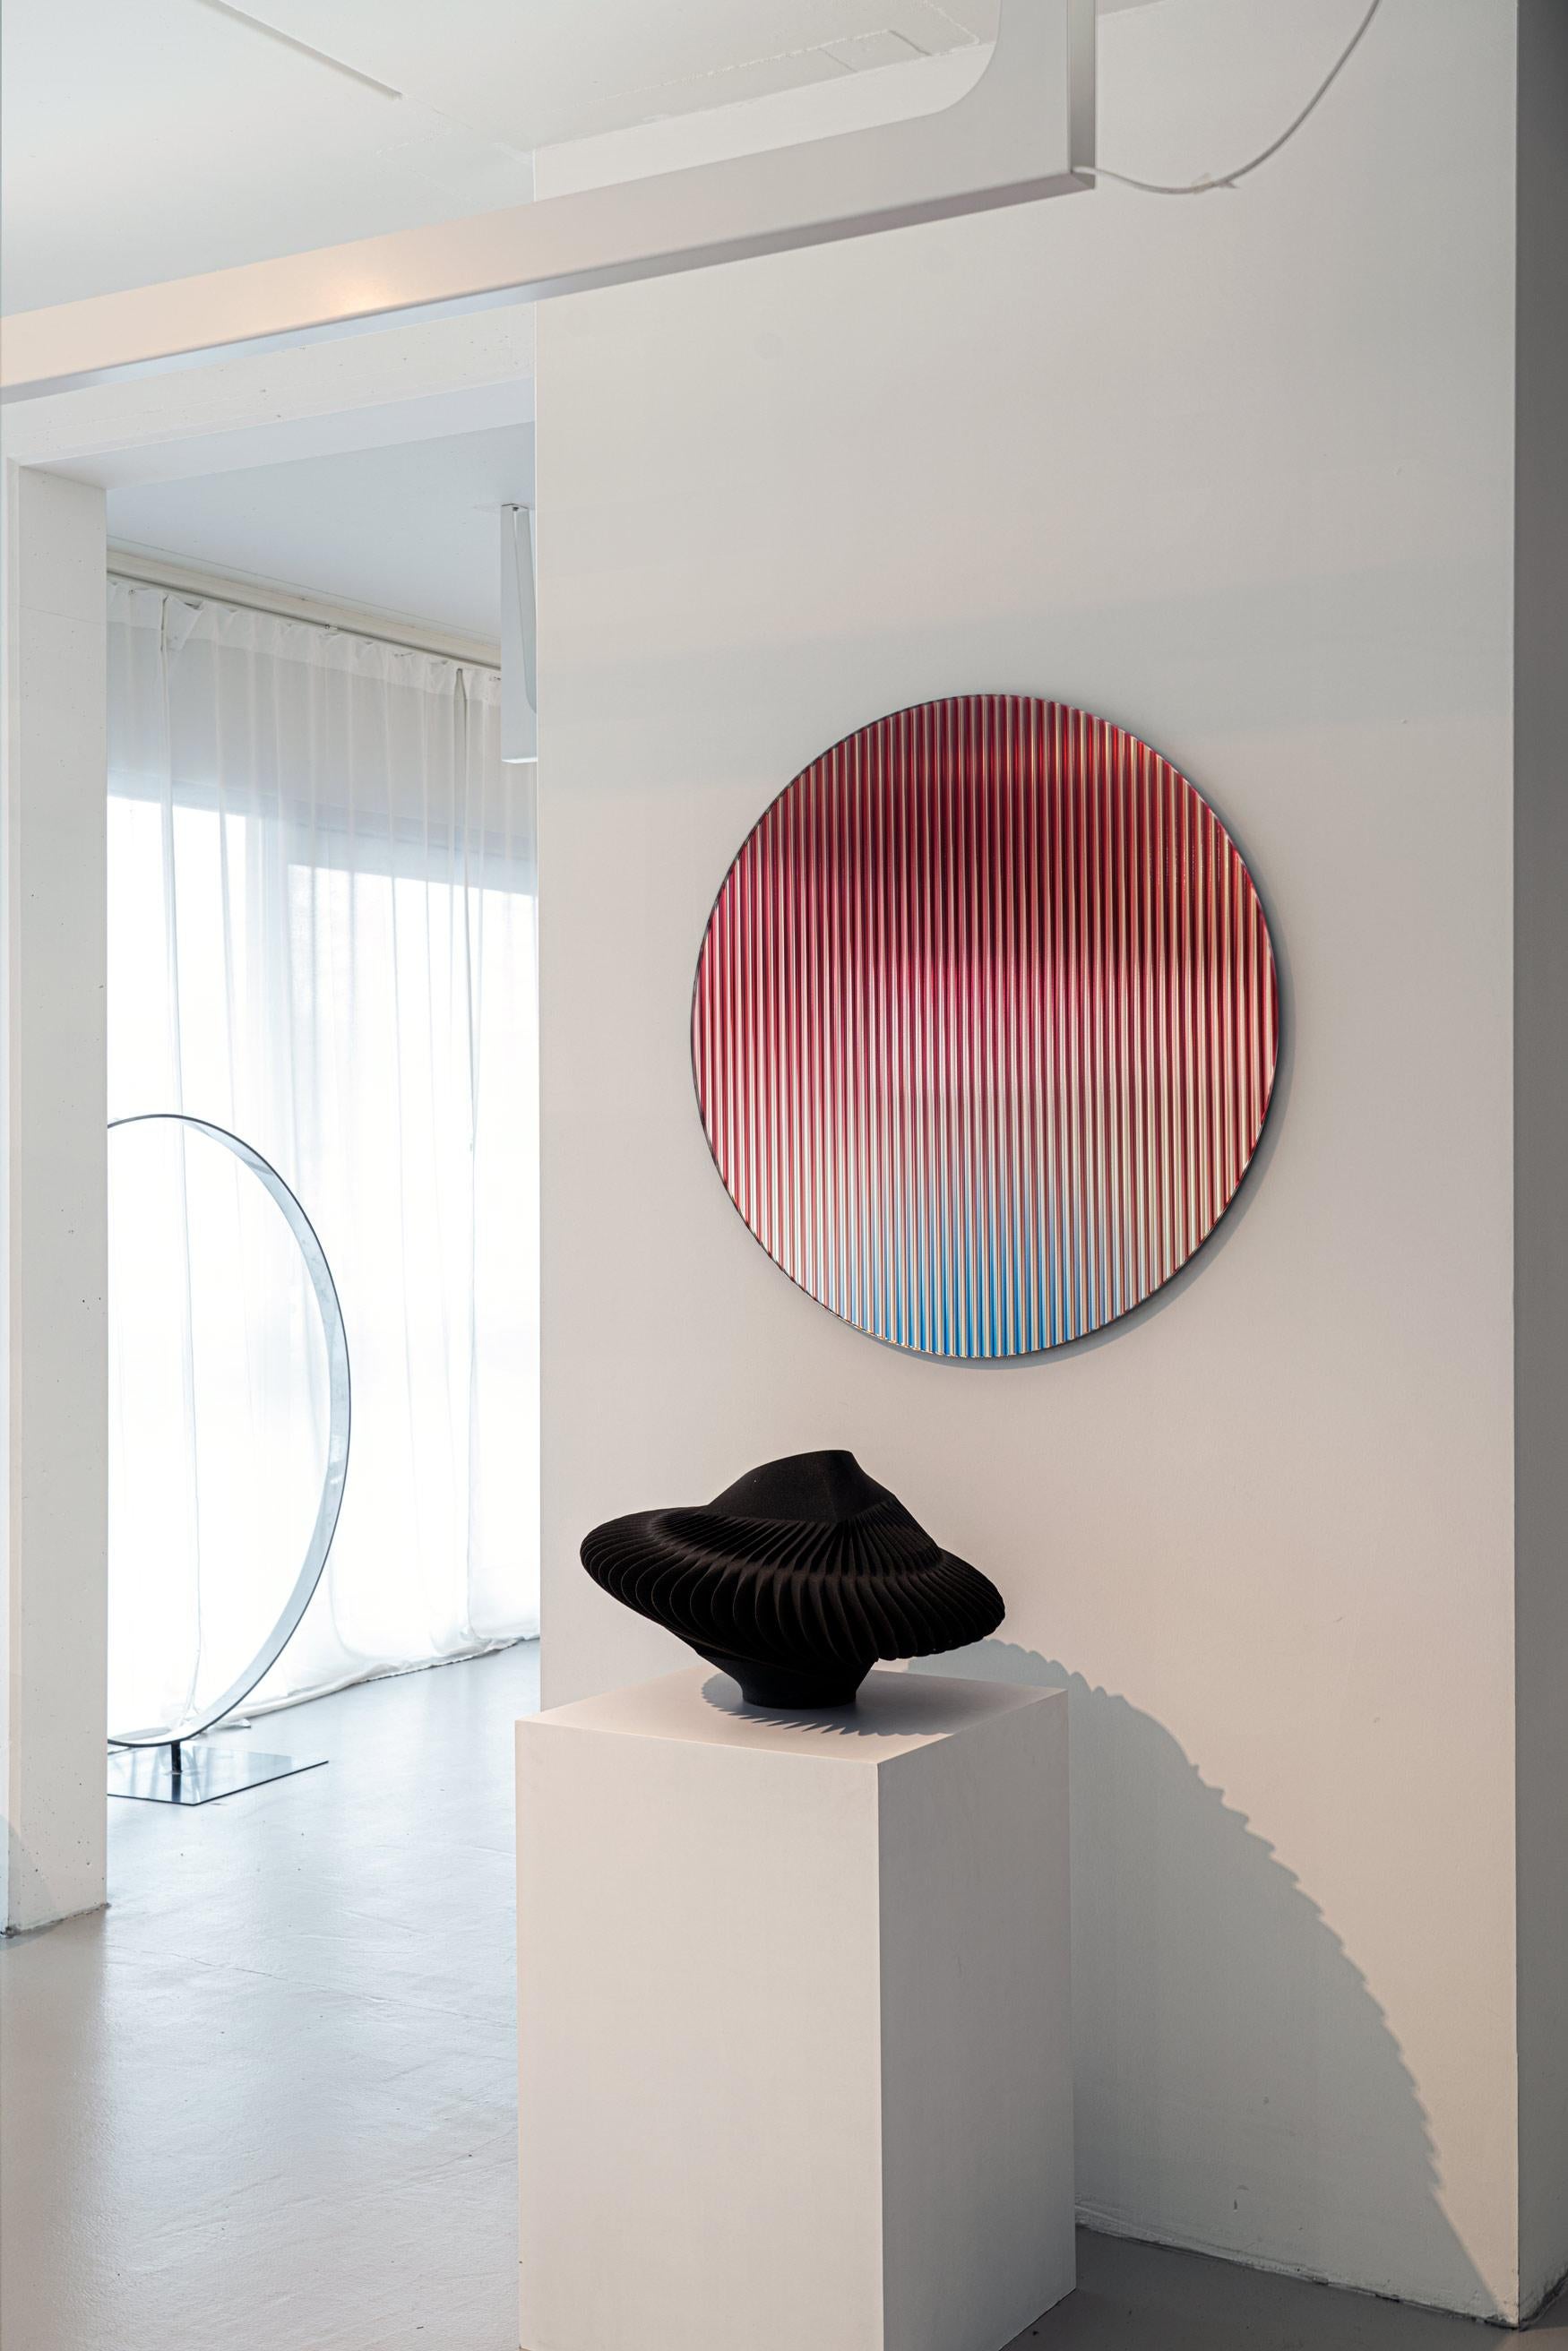 Die spiegelnde, farbige, gewellte Glasplatte, die eine Farbpalette in den Raum bringen soll, reflektiert das Licht im Raum und sorgt für Bewegung und Farbe, während sie abstrakte Spiegelungen erzeugt. Das Werk streut das Licht durch seine gewellte